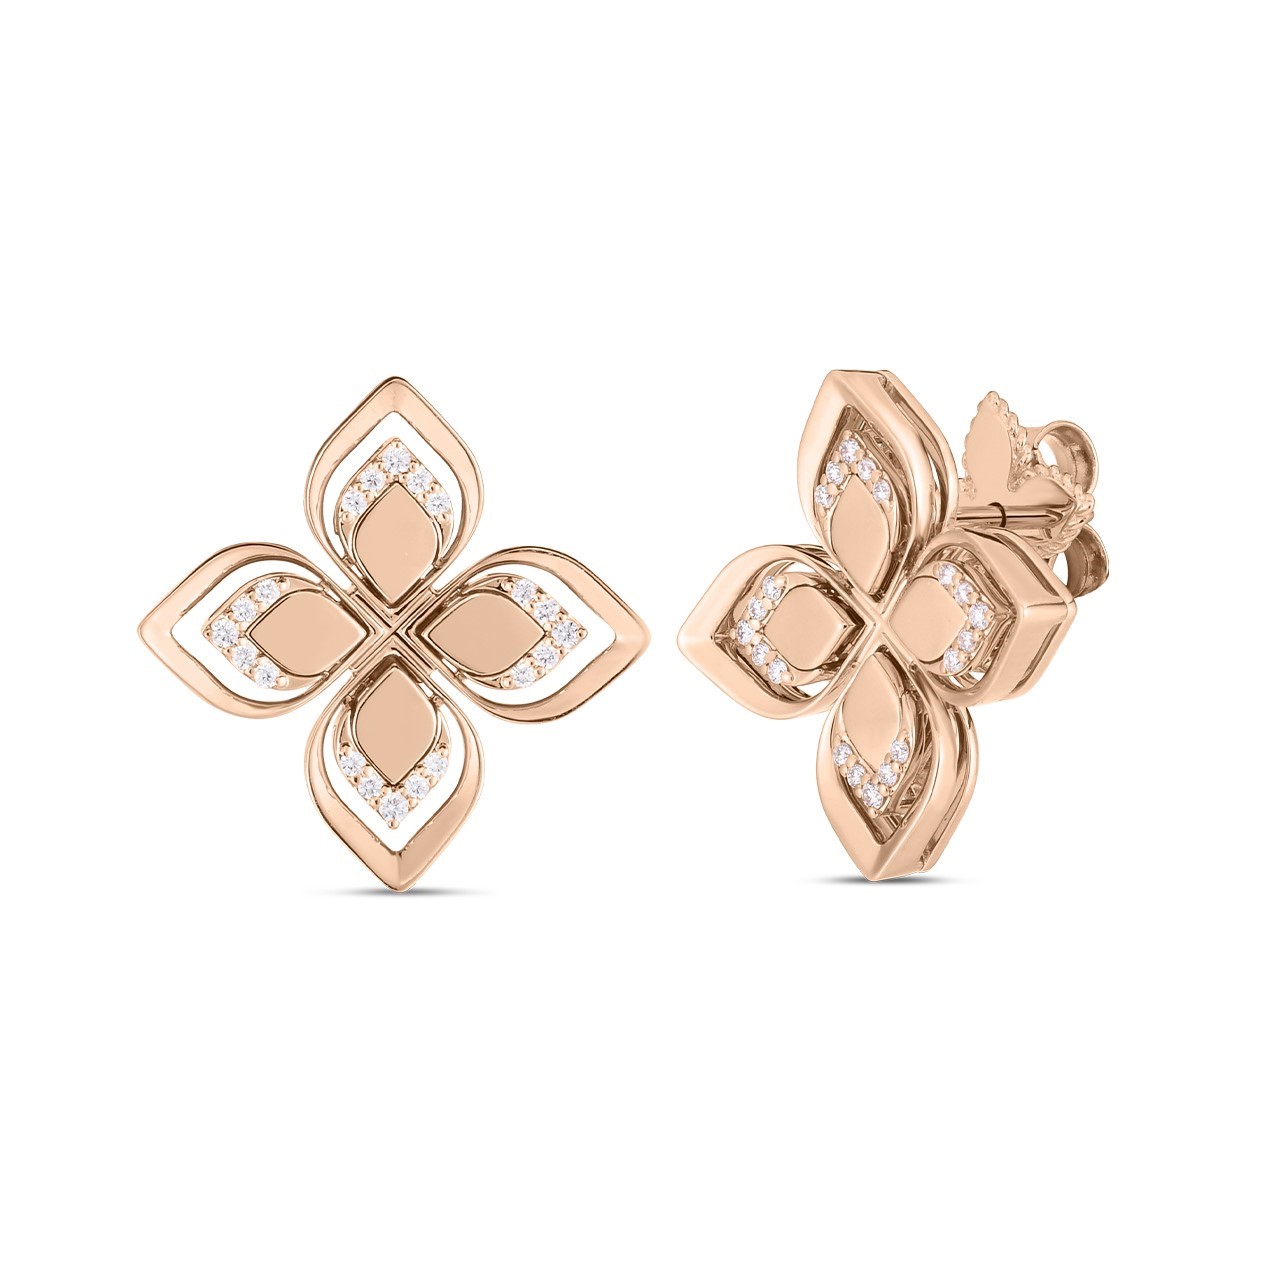 Roberto Coin 18K Rose Gold Venetian Princess Open Frame Diamond Flower Stud Earrings